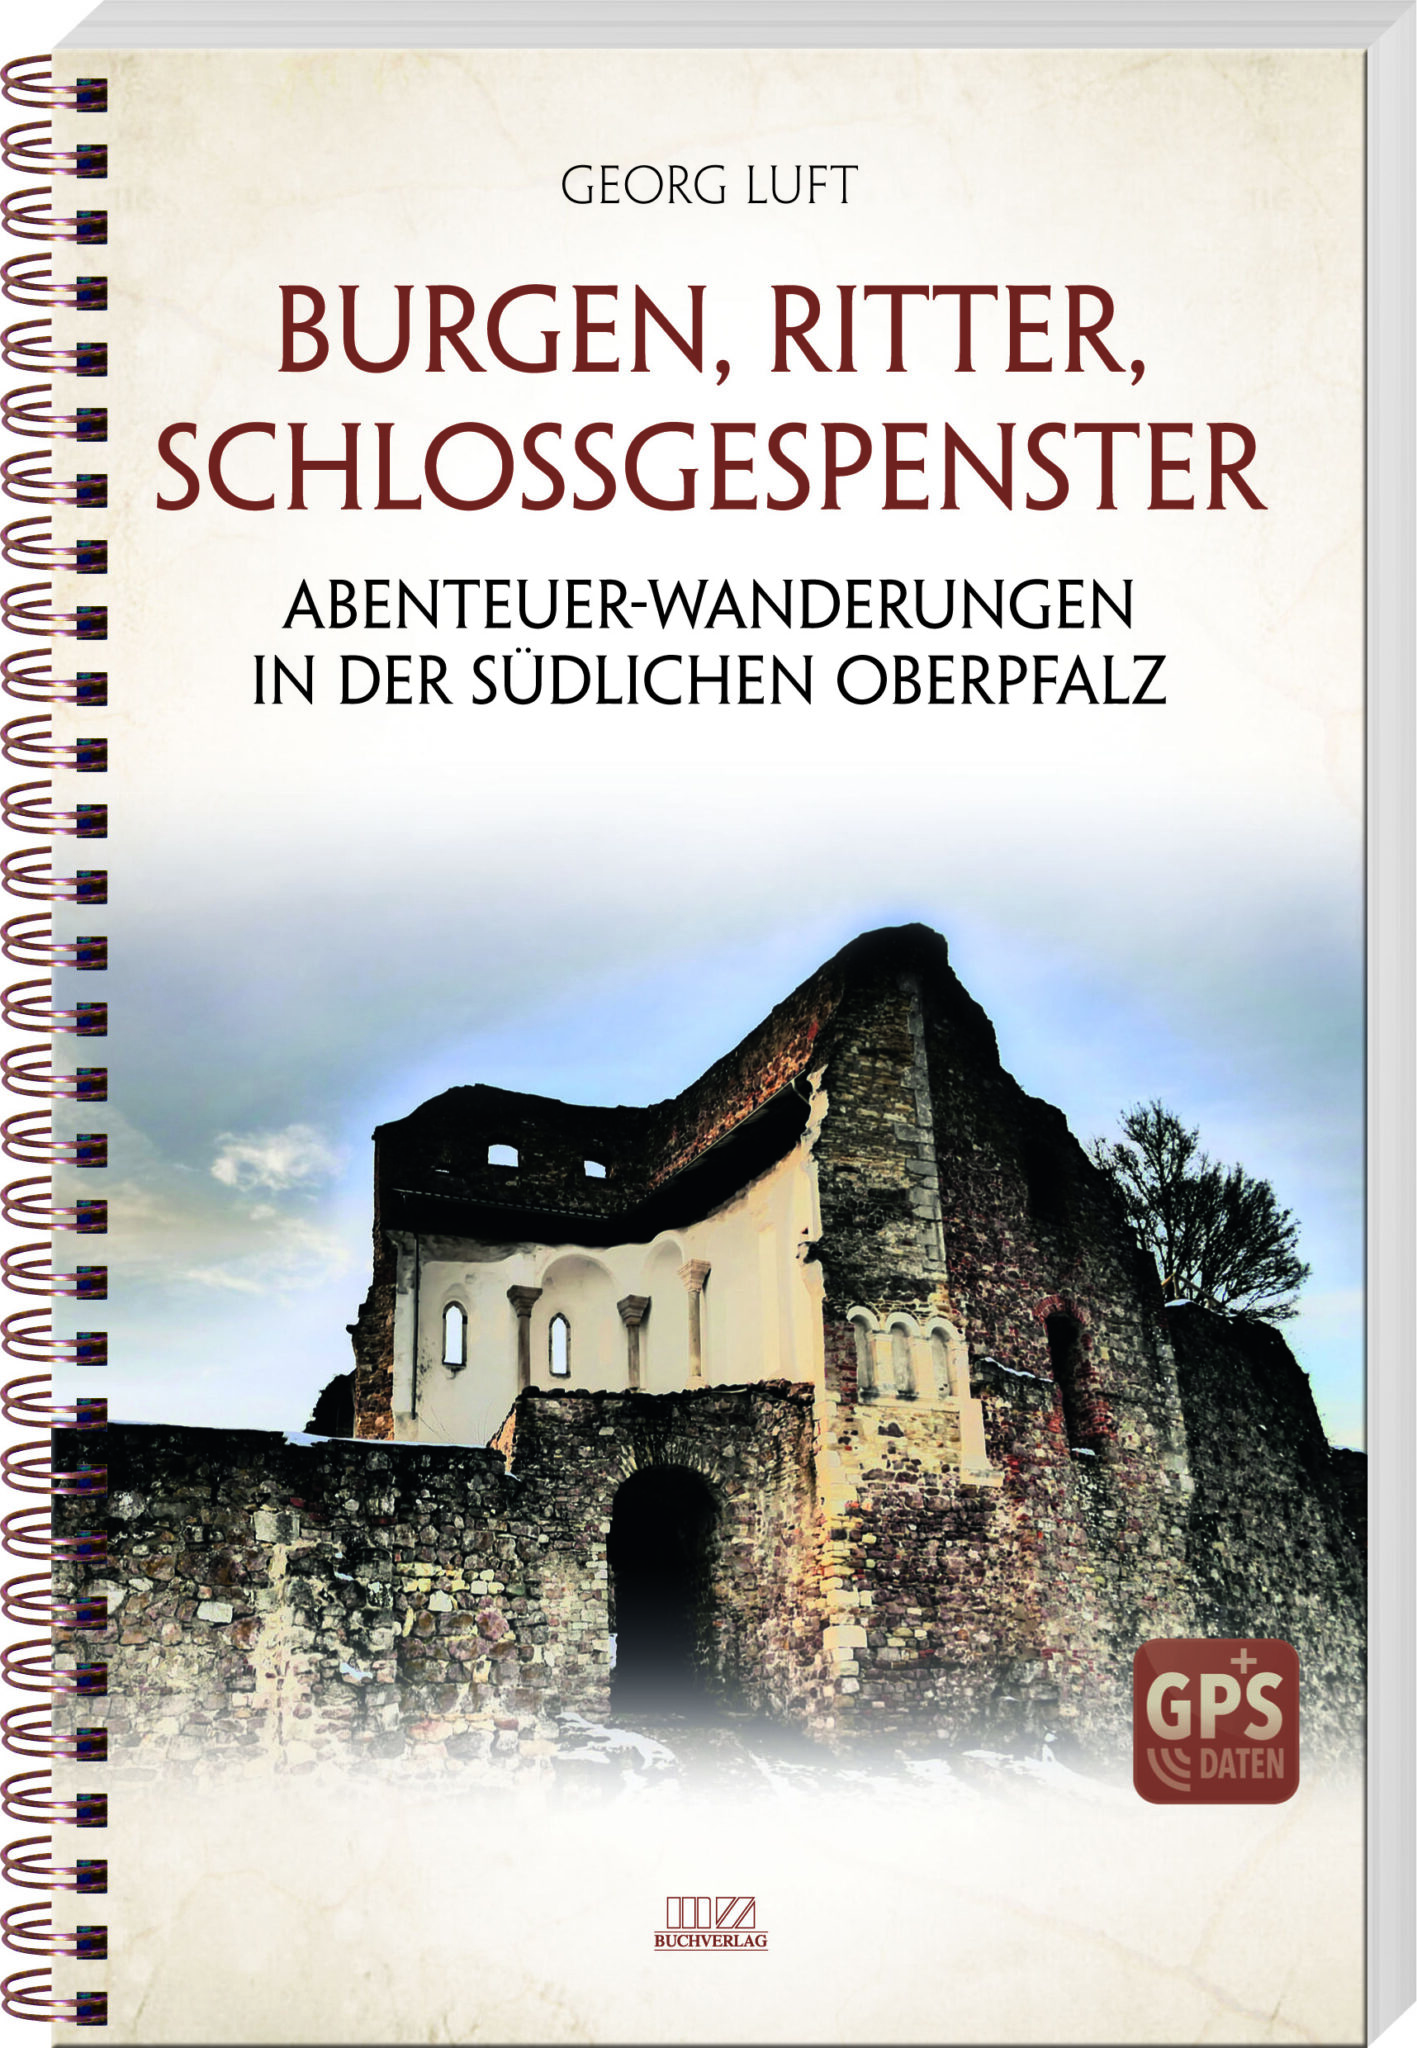 Buchtitel Burgen, Ritter, Schlossgespenster von Georg Luft © Battenberg Verlag